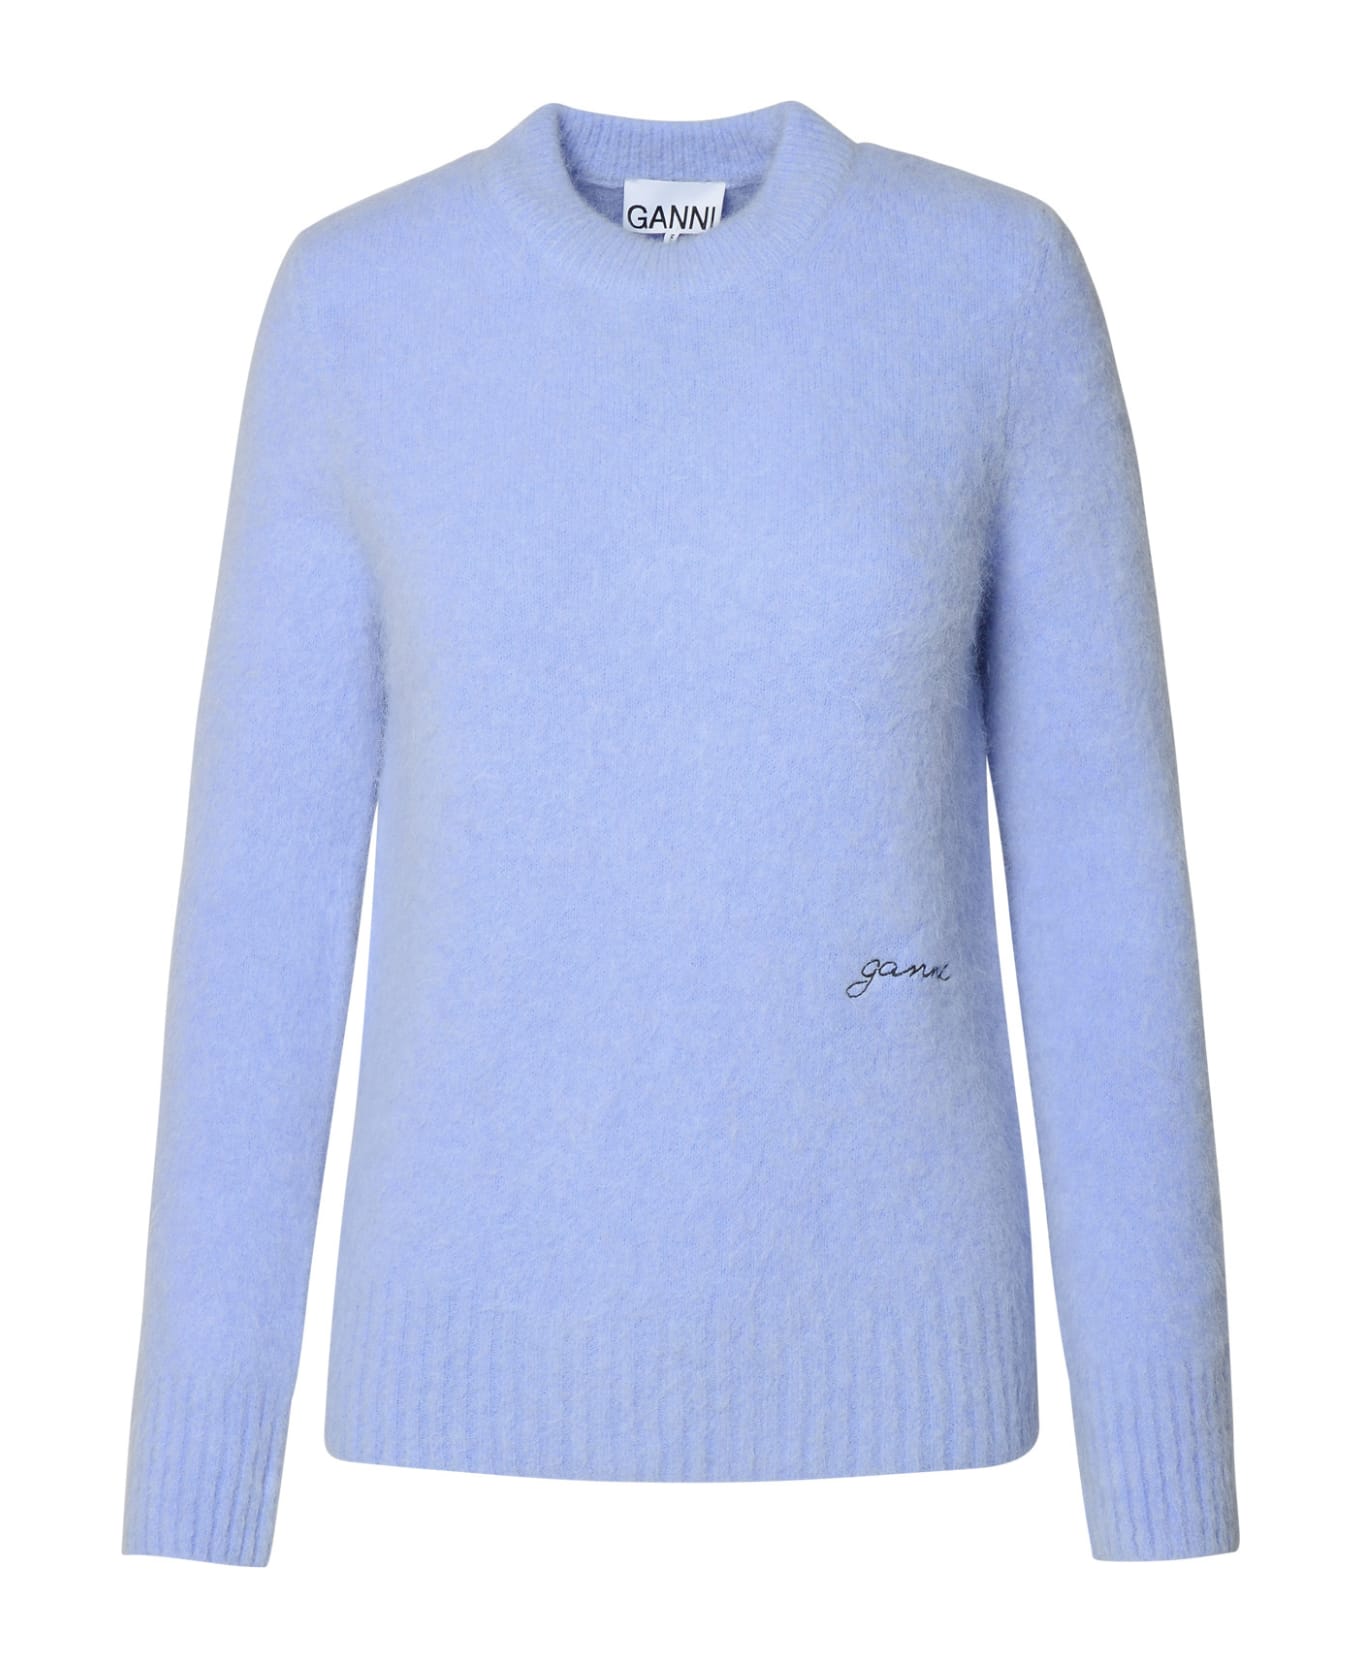 Ganni Light Blue Virgin Wool Blend Sweater - Liliac